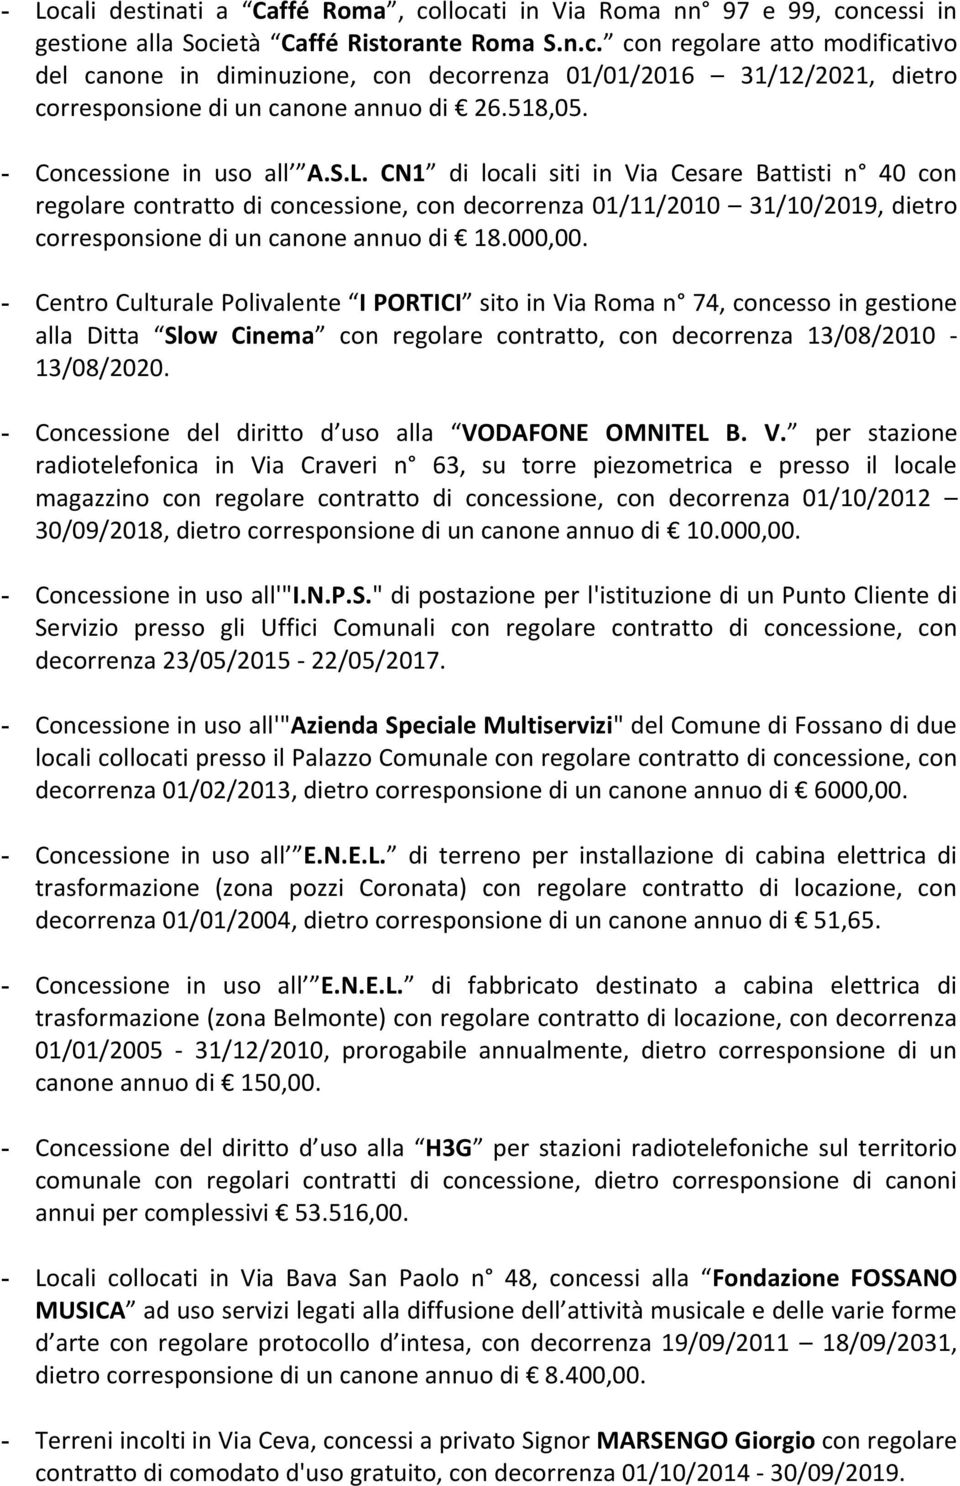 CN1 di locali siti in Via Cesare Battisti n 40 con regolare contratto di concessione, con decorrenza 01/11/2010 31/10/2019, dietro corresponsione di un canone annuo di 18.000,00.